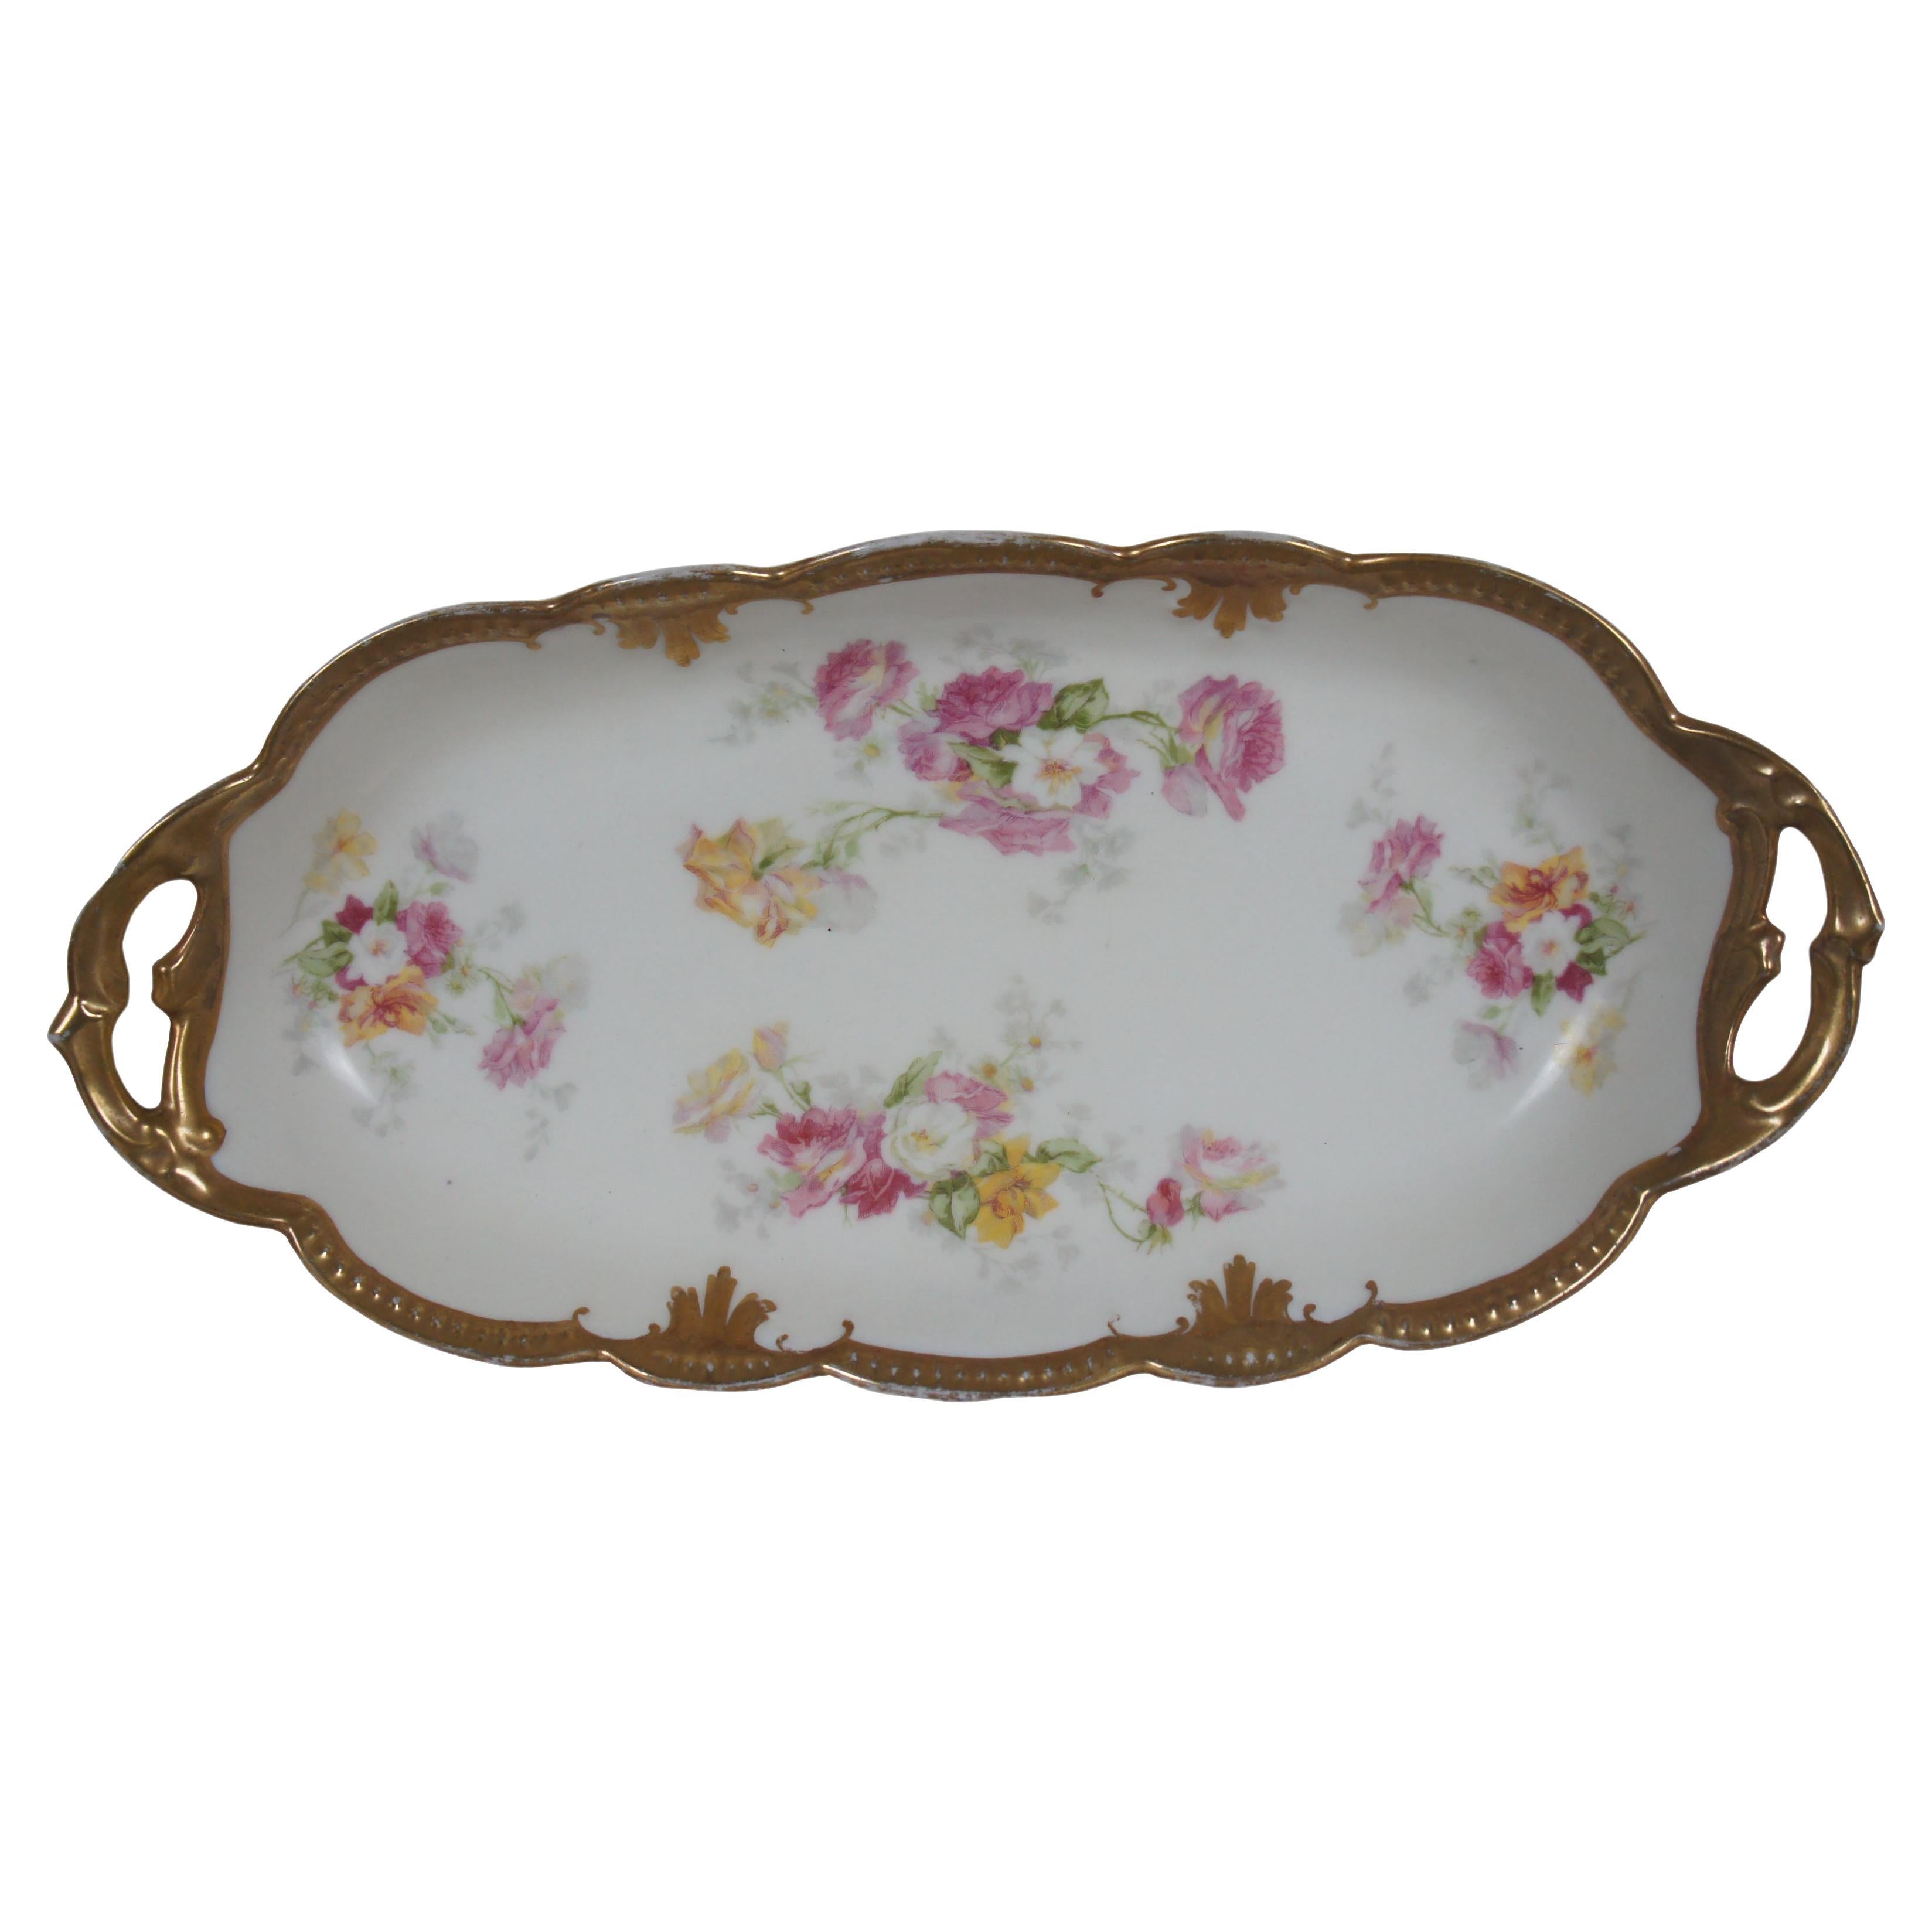 Antique plat de toilette ovale festonné de fleurs de Limoges France 13 po.